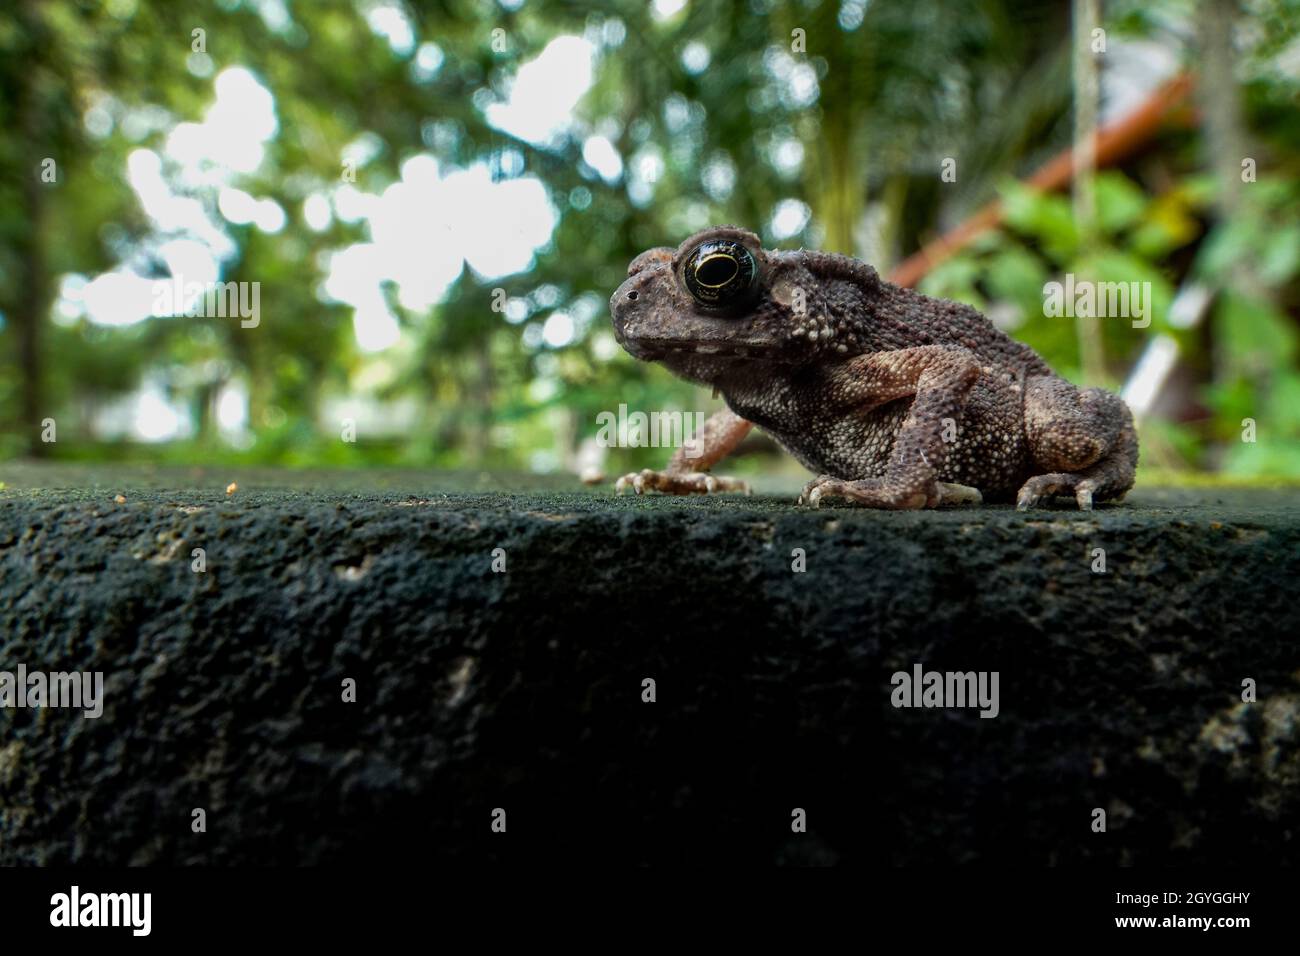 Macro-image grand angle avec diffuseur flash d'une jolie grenouille assise sur une feuille dans son habitat naturel Banque D'Images